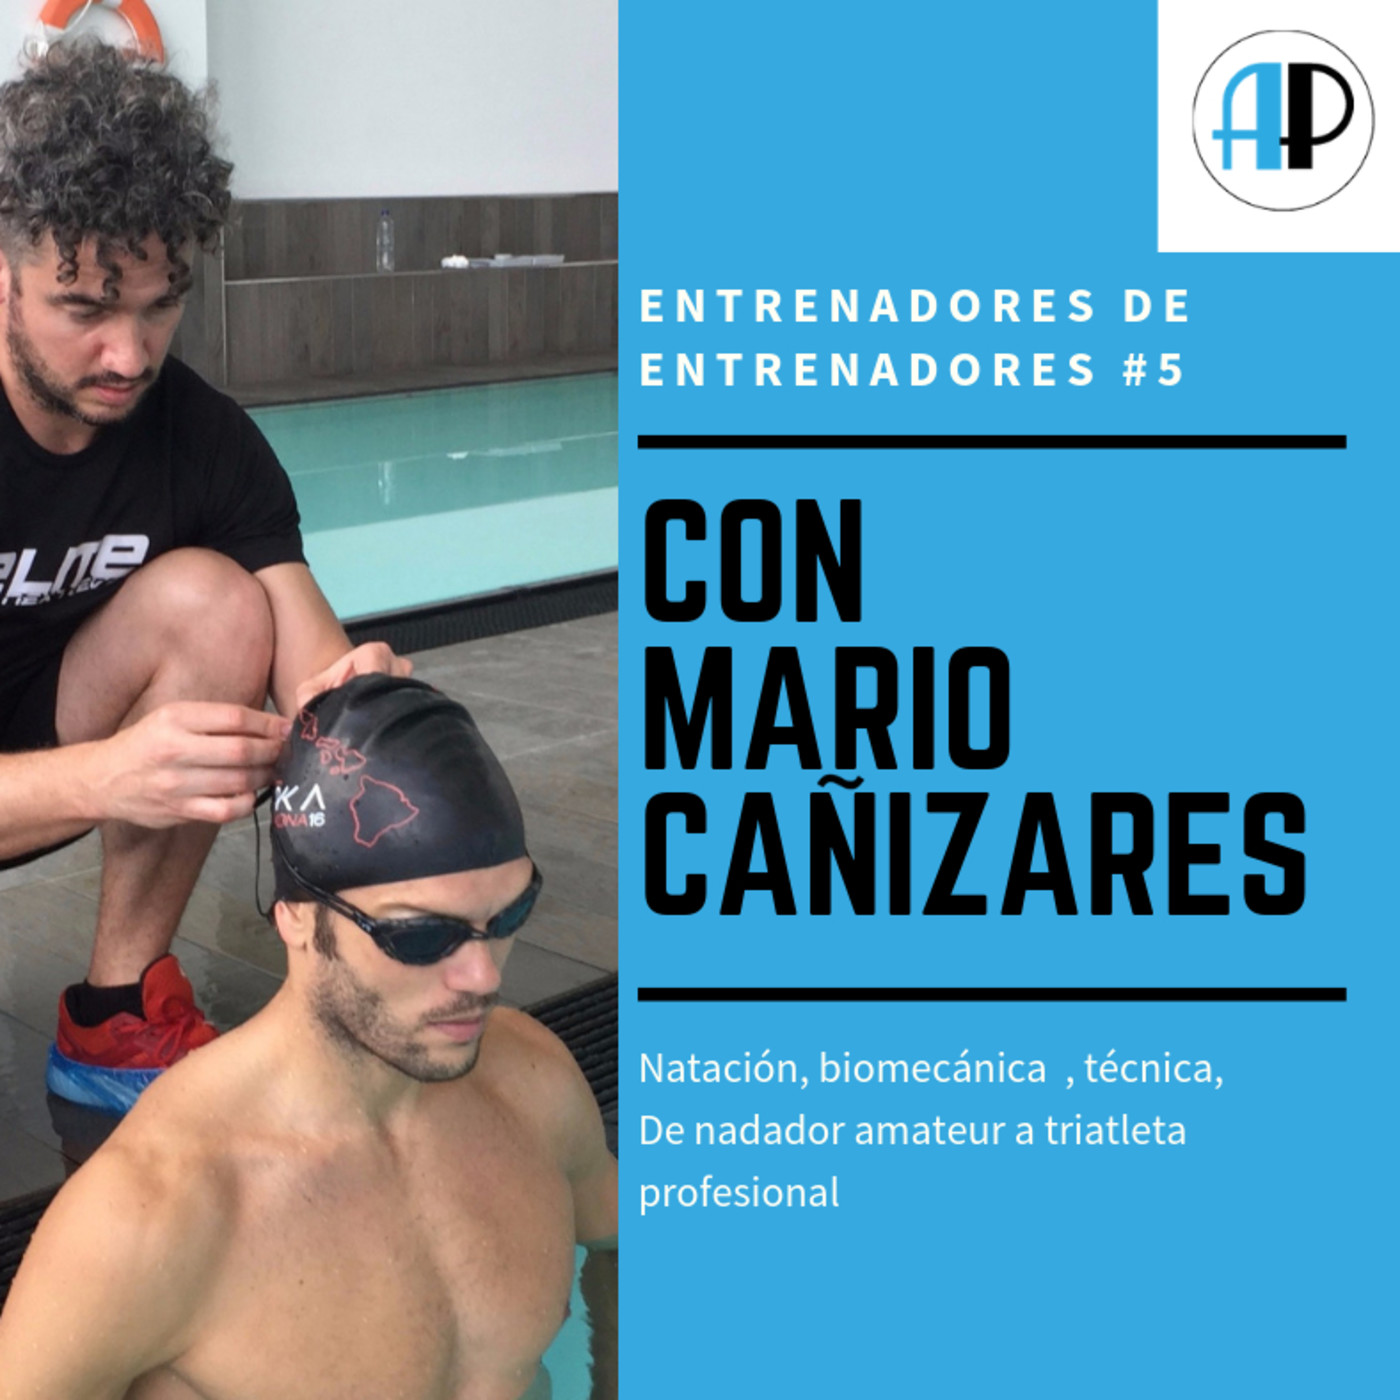 #Ede5 De nadador amateur a triatleta profesional con Mario Cañizares